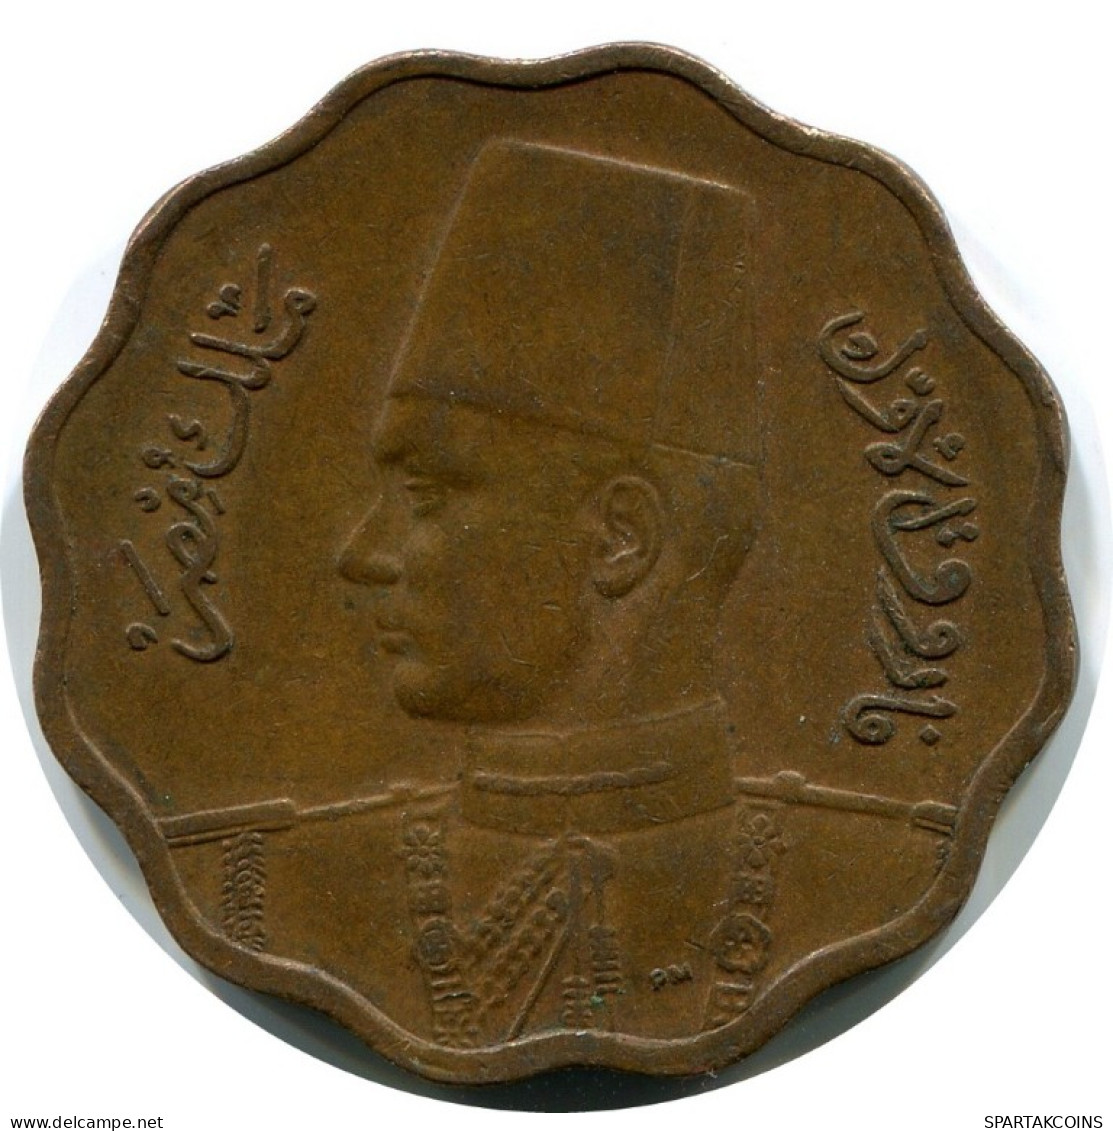 10 MILLIEMES 1943 ÄGYPTEN EGYPT Islamisch Münze #AK024.D.A - Aegypten